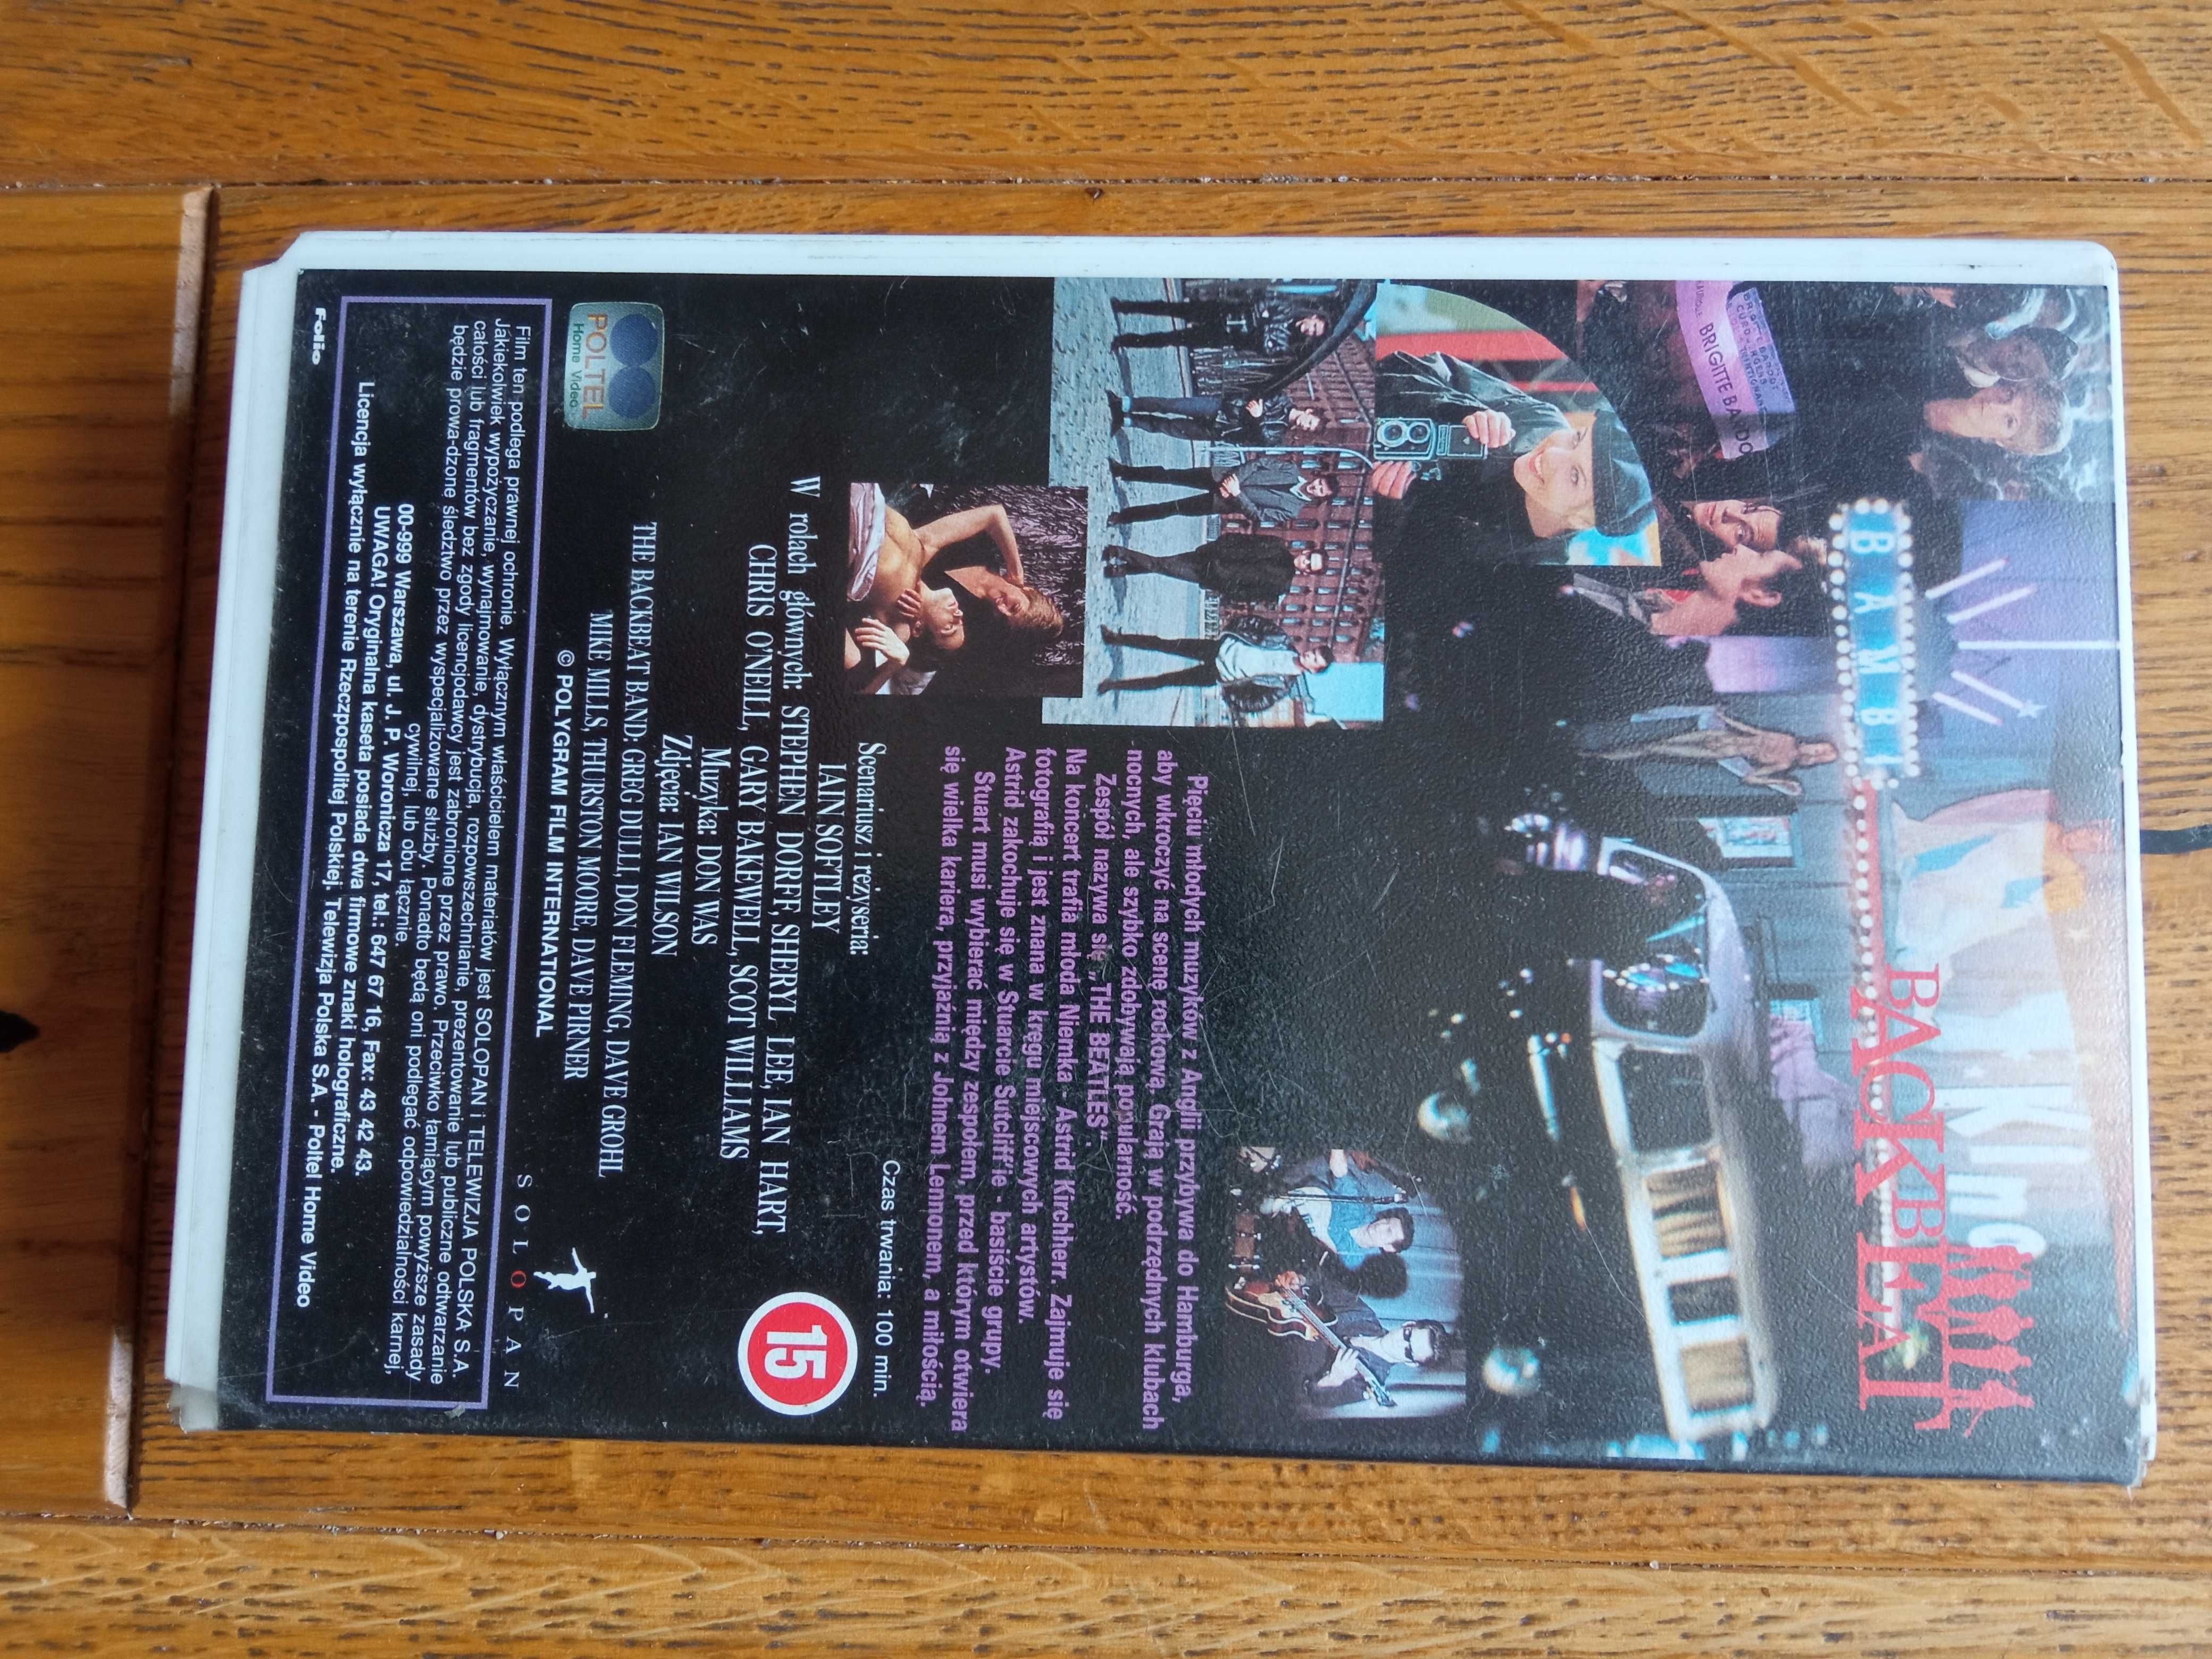 Backbeat film kaseta VHS